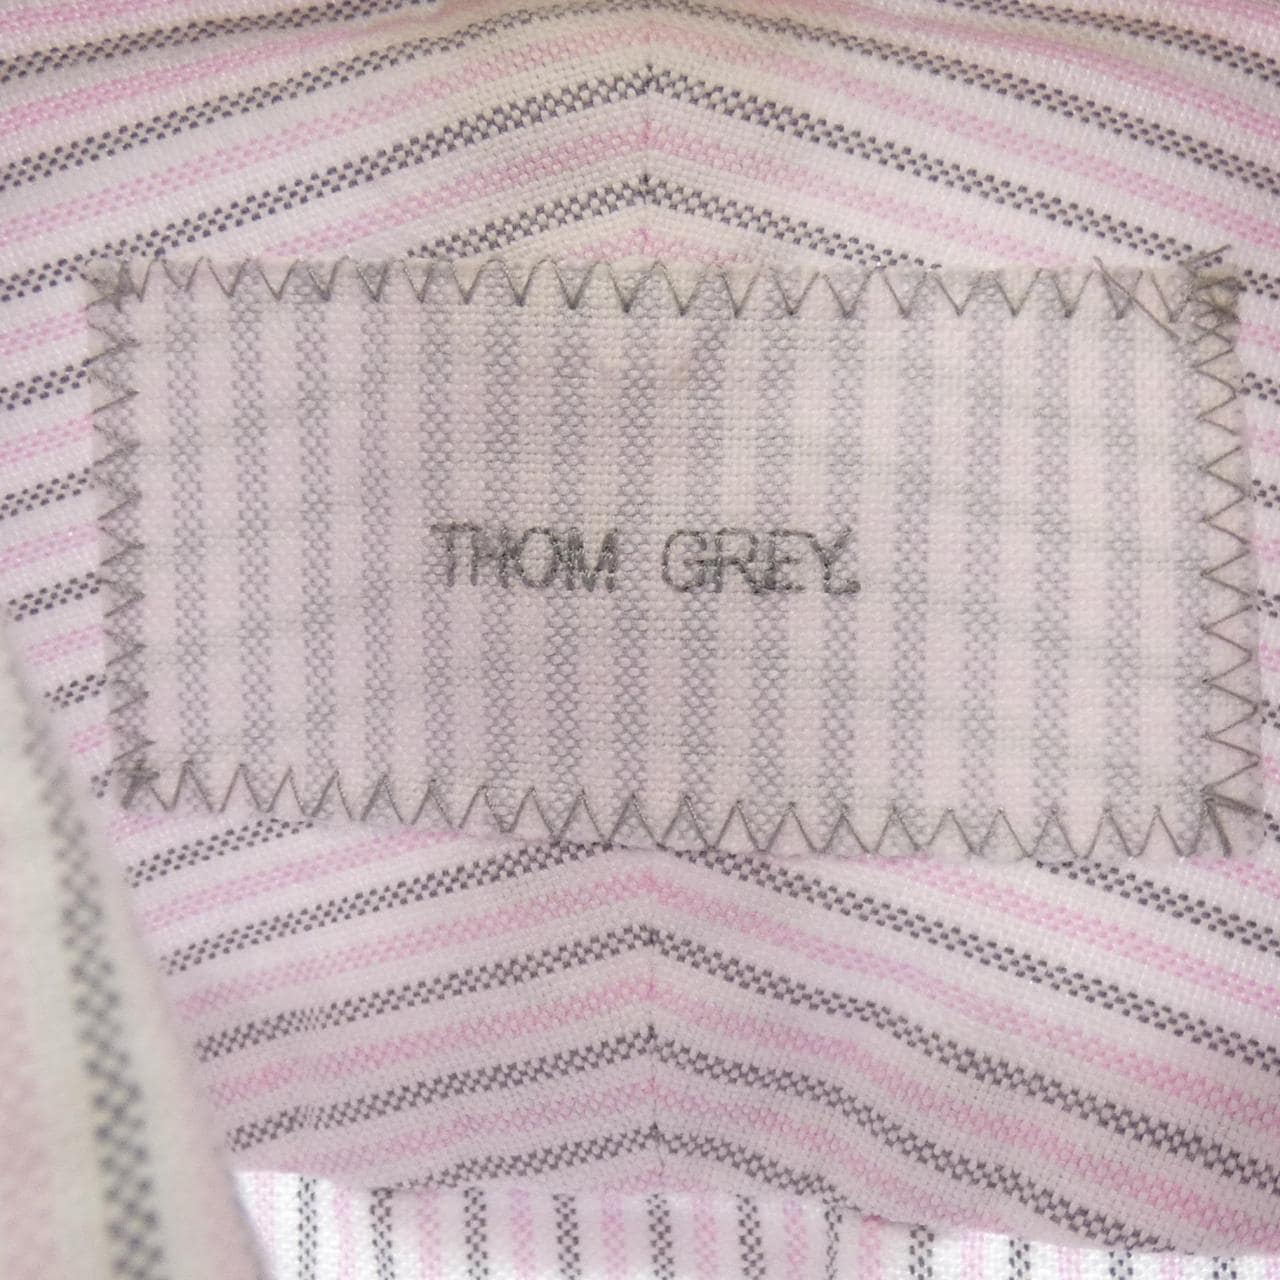 湯姆格雷THOM GREY襯衫